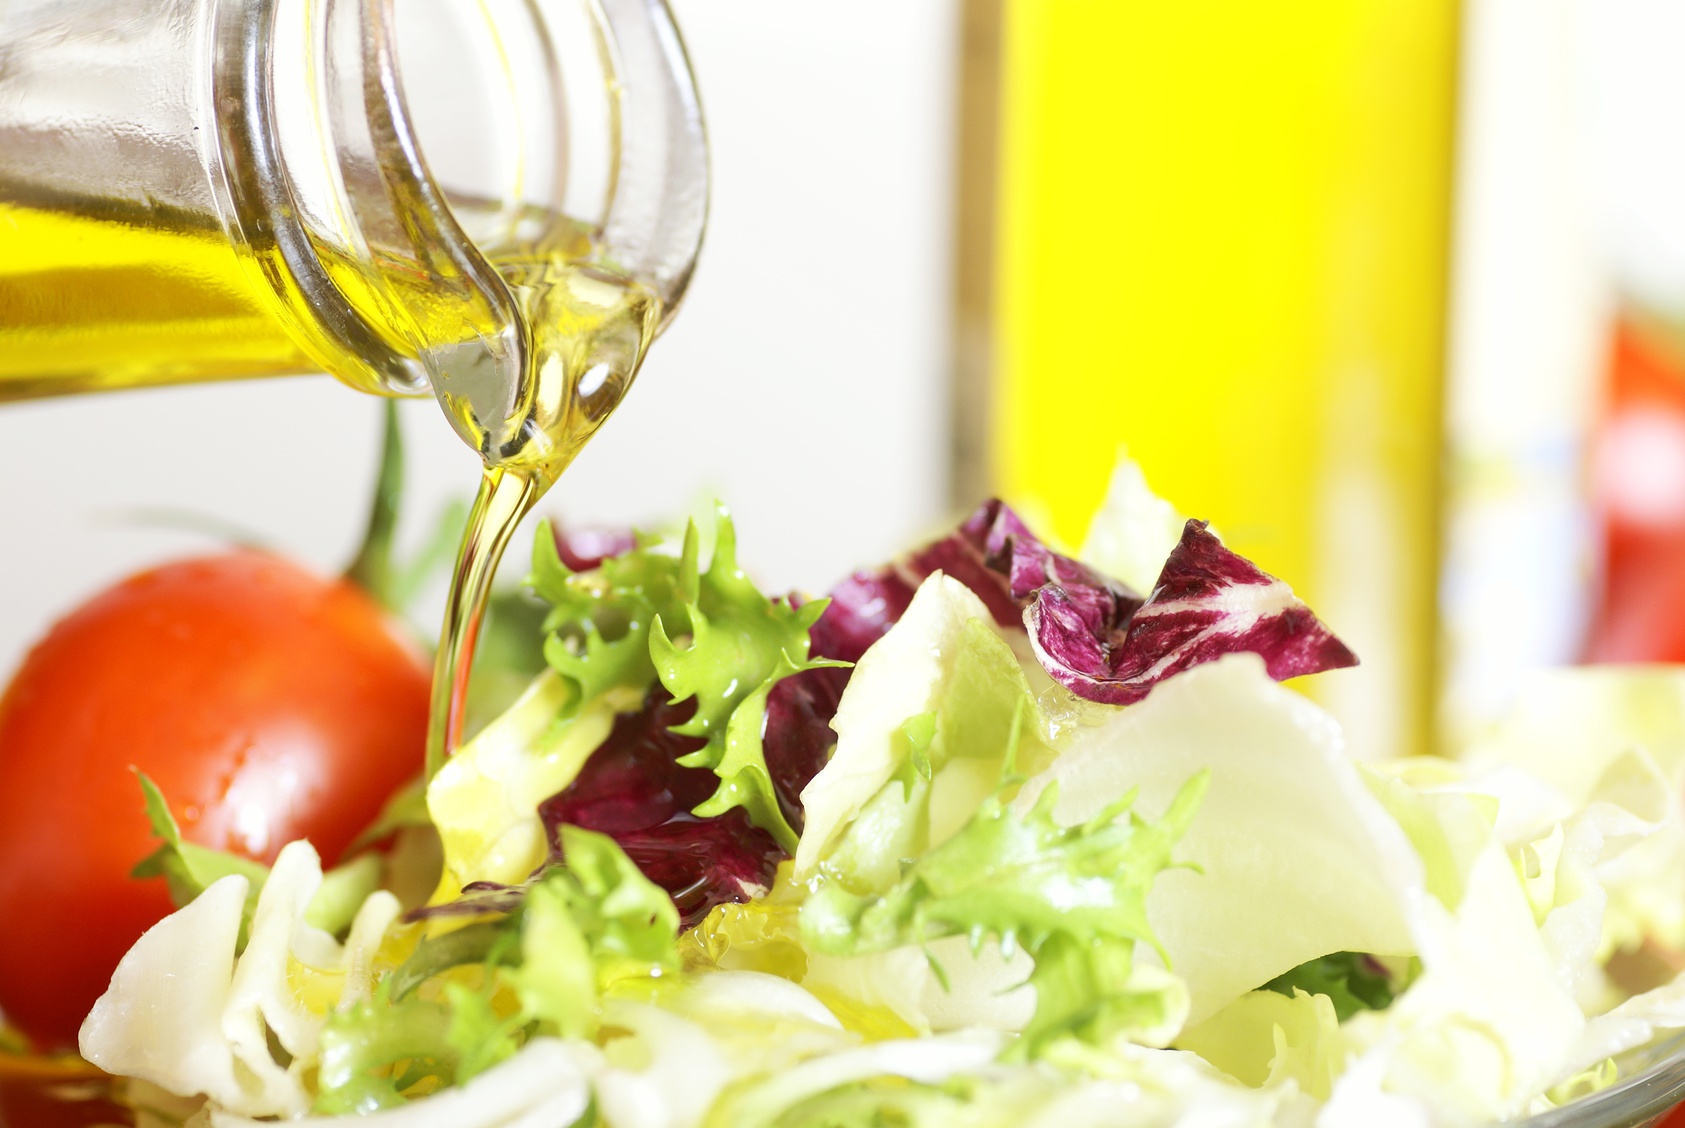 Histoire d’huiles, booster vos salades en changeant de vinaigrette